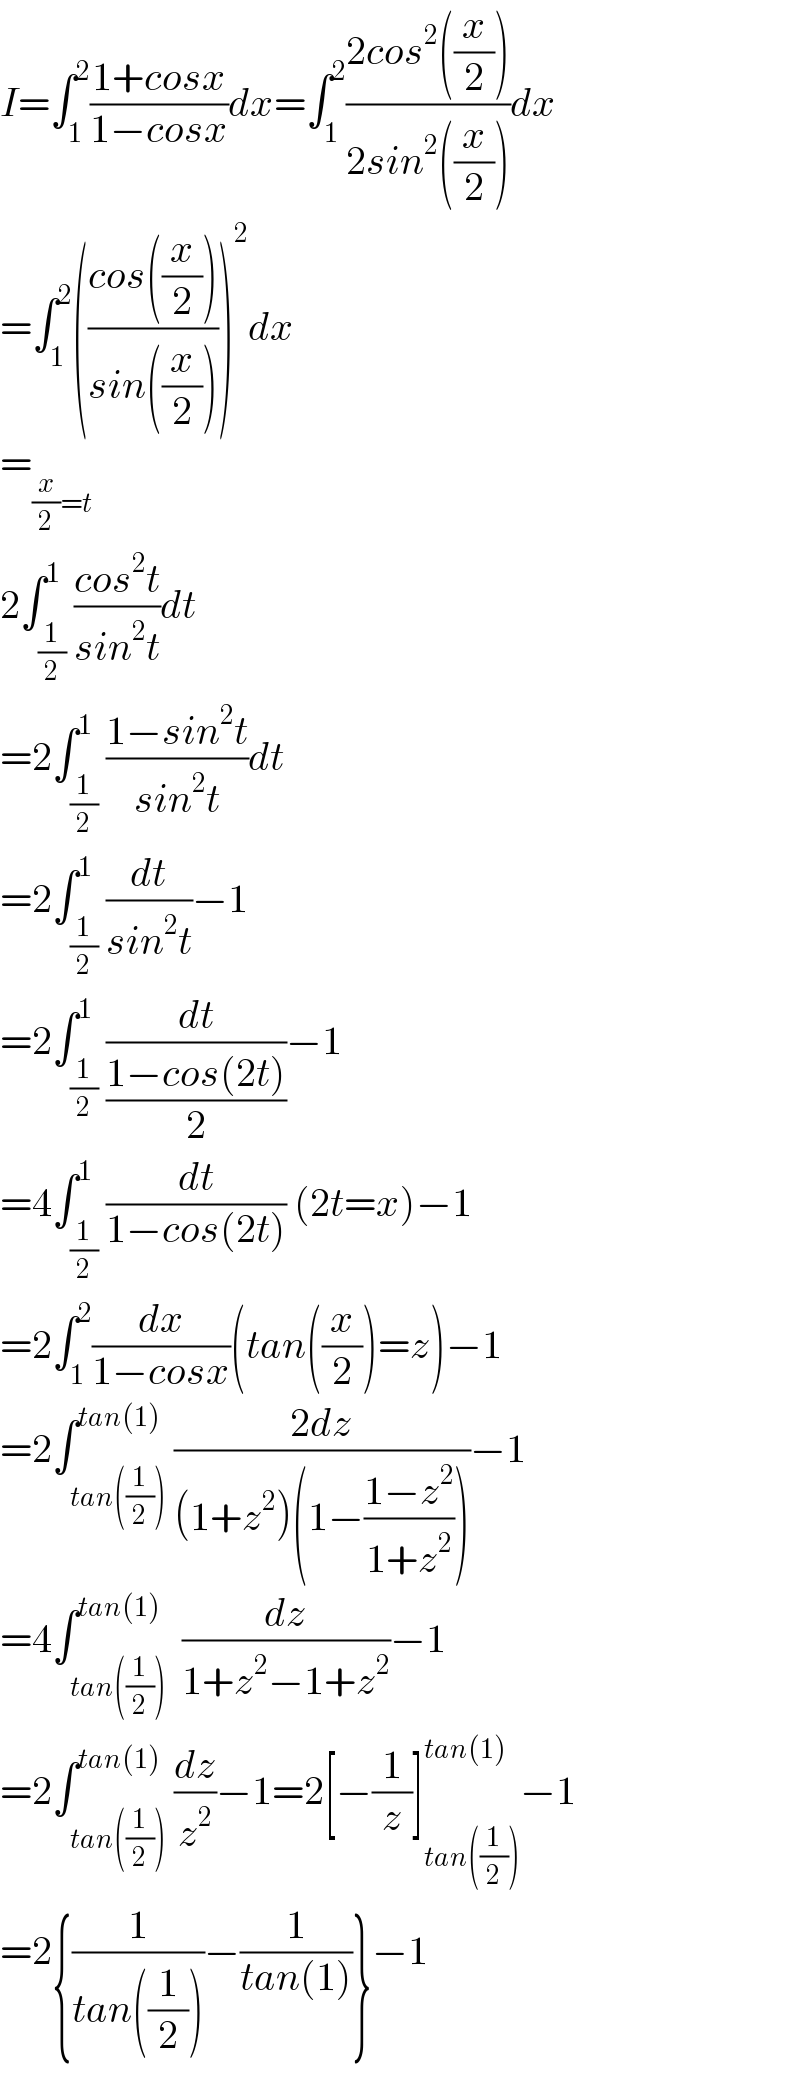 I=∫_1 ^2 ((1+cosx)/(1−cosx))dx=∫_1 ^2 ((2cos^2 ((x/2)))/(2sin^2 ((x/2))))dx  =∫_1 ^2 (((cos((x/2)))/(sin((x/2)))))^2 dx  =_((x/2)=t)     2∫_(1/2) ^1 ((cos^2 t)/(sin^2 t))dt  =2∫_(1/2) ^1 ((1−sin^2 t)/(sin^2 t))dt  =2∫_(1/2) ^1 (dt/(sin^2 t))−1  =2∫_(1/2) ^1 (dt/((1−cos(2t))/2))−1  =4∫_(1/2) ^1 (dt/(1−cos(2t))) (2t=x)−1  =2∫_1 ^2 (dx/(1−cosx))(tan((x/2))=z)−1  =2∫_(tan((1/2))) ^(tan(1)) ((2dz)/((1+z^2 )(1−((1−z^2 )/(1+z^2 )))))−1  =4∫_(tan((1/2))) ^(tan(1))  (dz/(1+z^2 −1+z^2 ))−1  =2∫_(tan((1/2))) ^(tan(1)) (dz/z^2 )−1=2[−(1/z)]_(tan((1/2))) ^(tan(1)) −1  =2{(1/(tan((1/2))))−(1/(tan(1)))}−1  